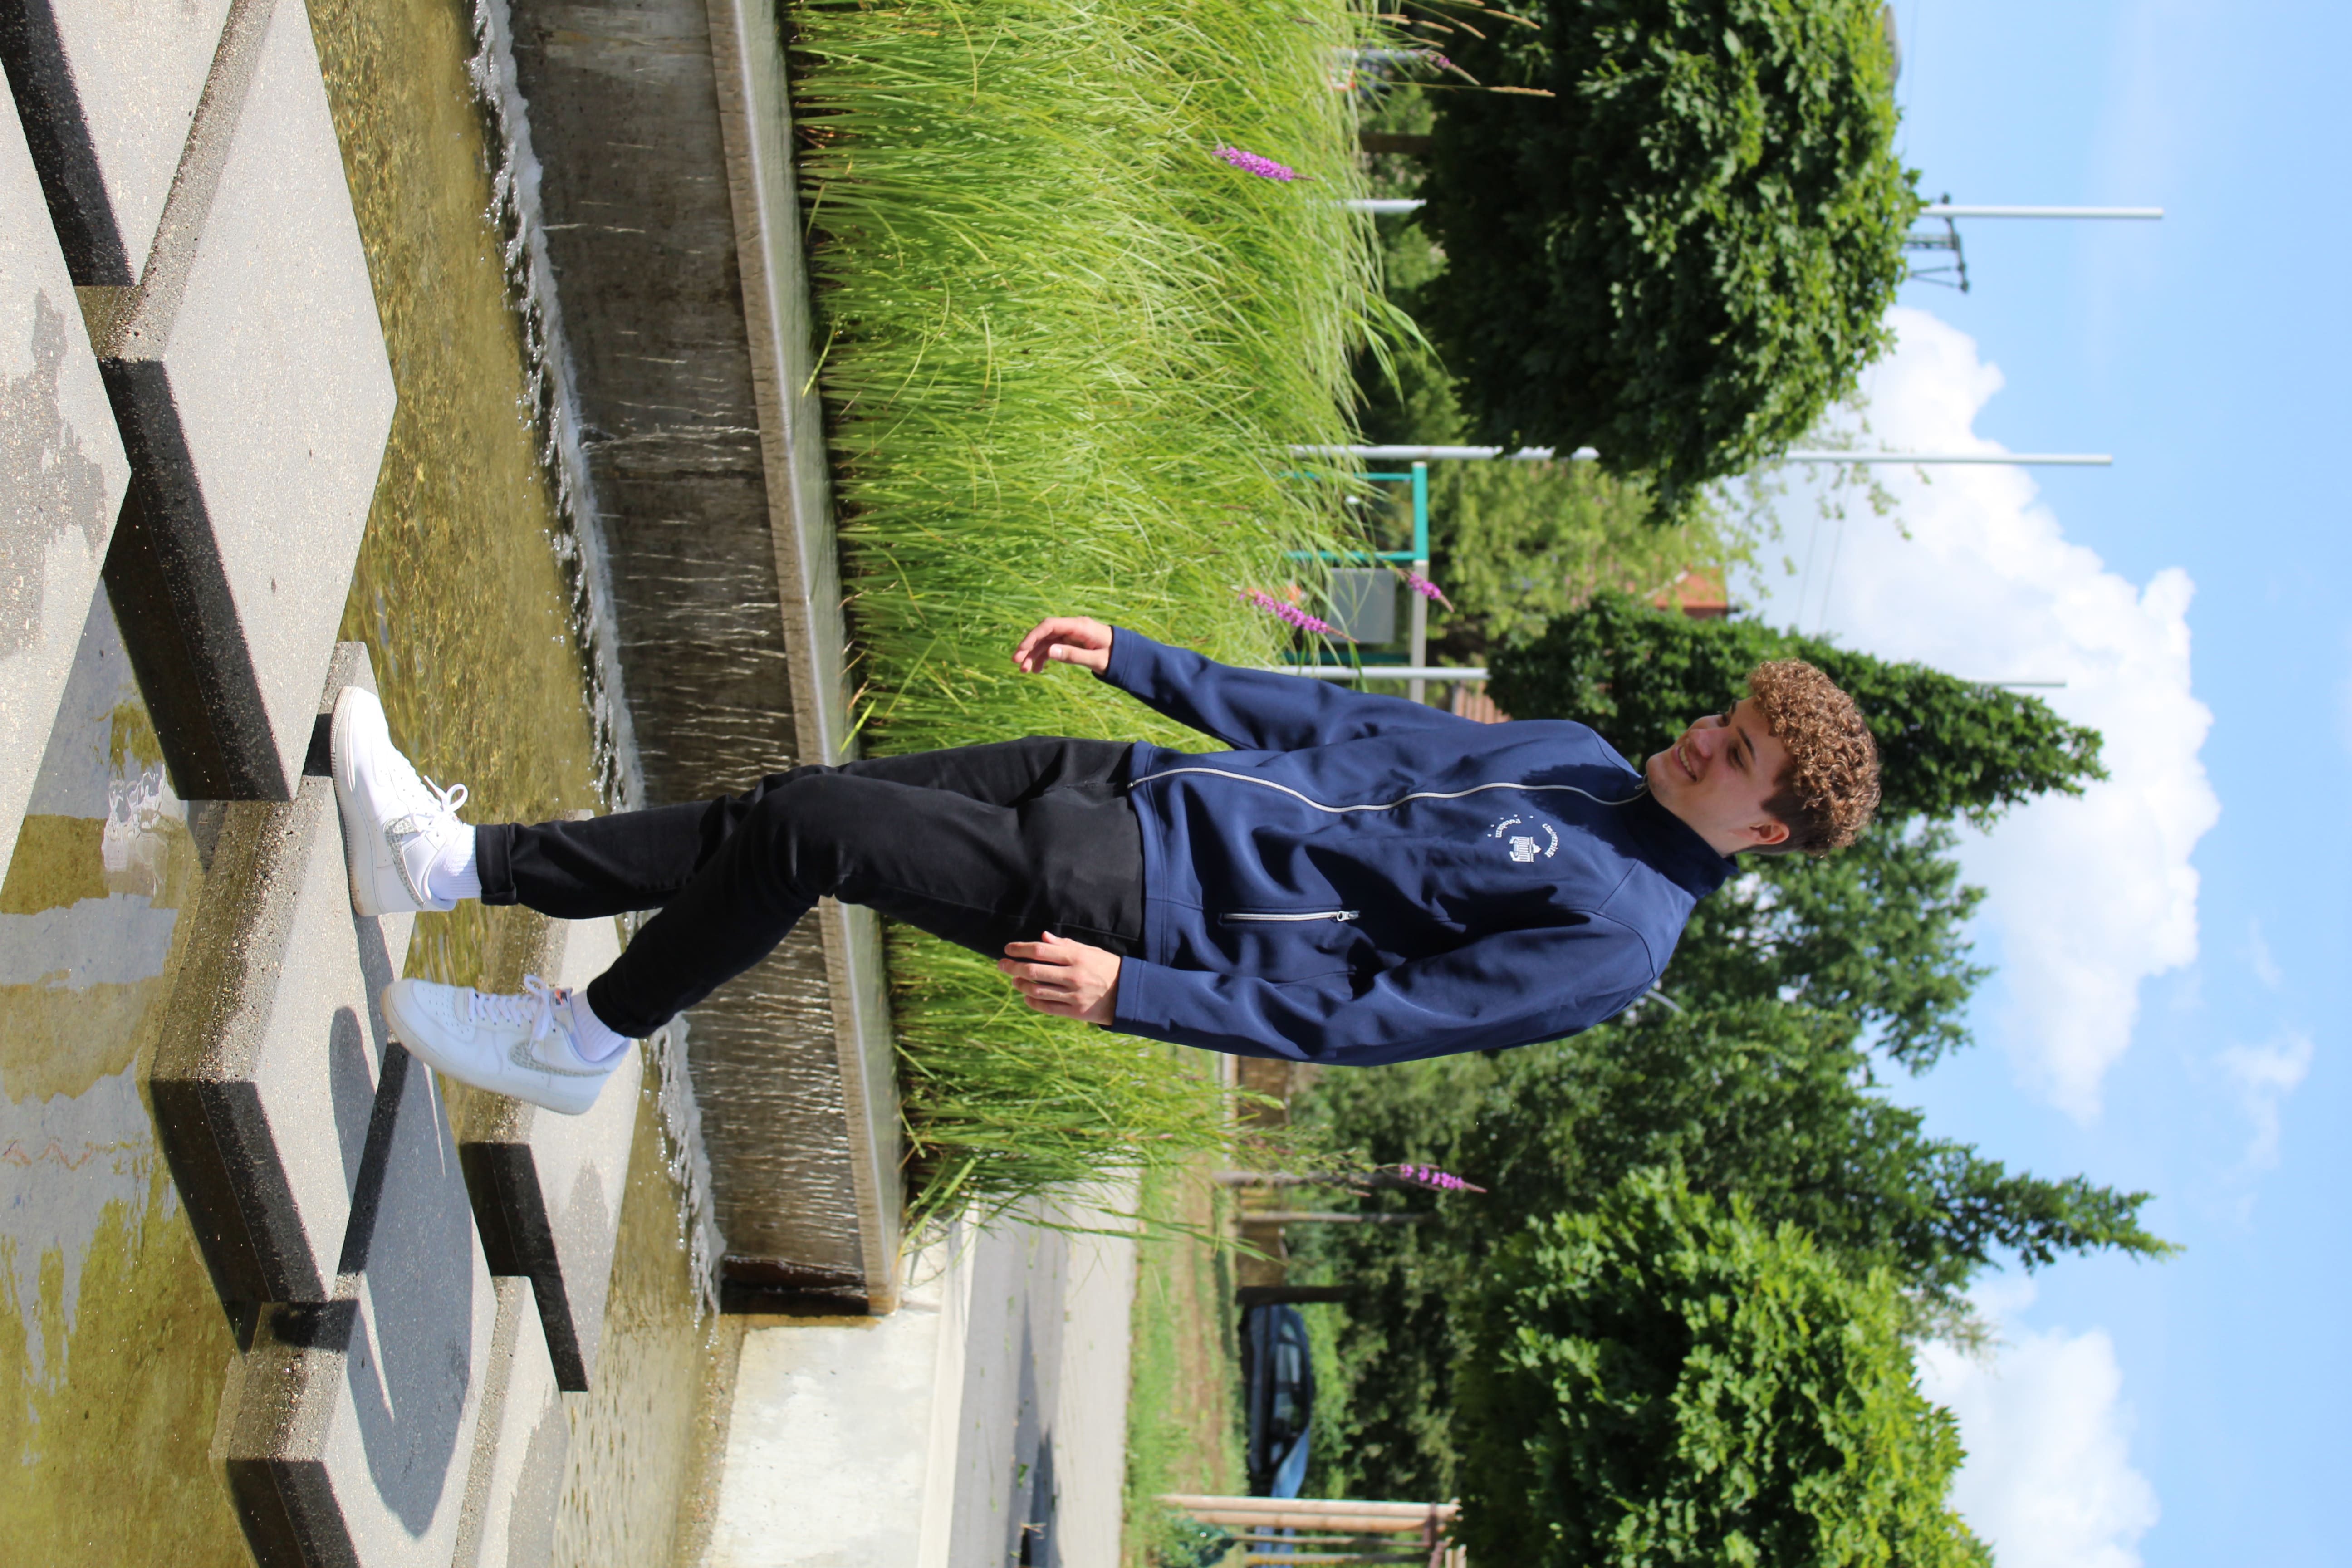 Softshelljacke-Herren. Abgebildet ist ein junger Mann mit einer blauen Softshelljacke. Er läuft auf Steinplattformen zwischen denen Wasser fließt.